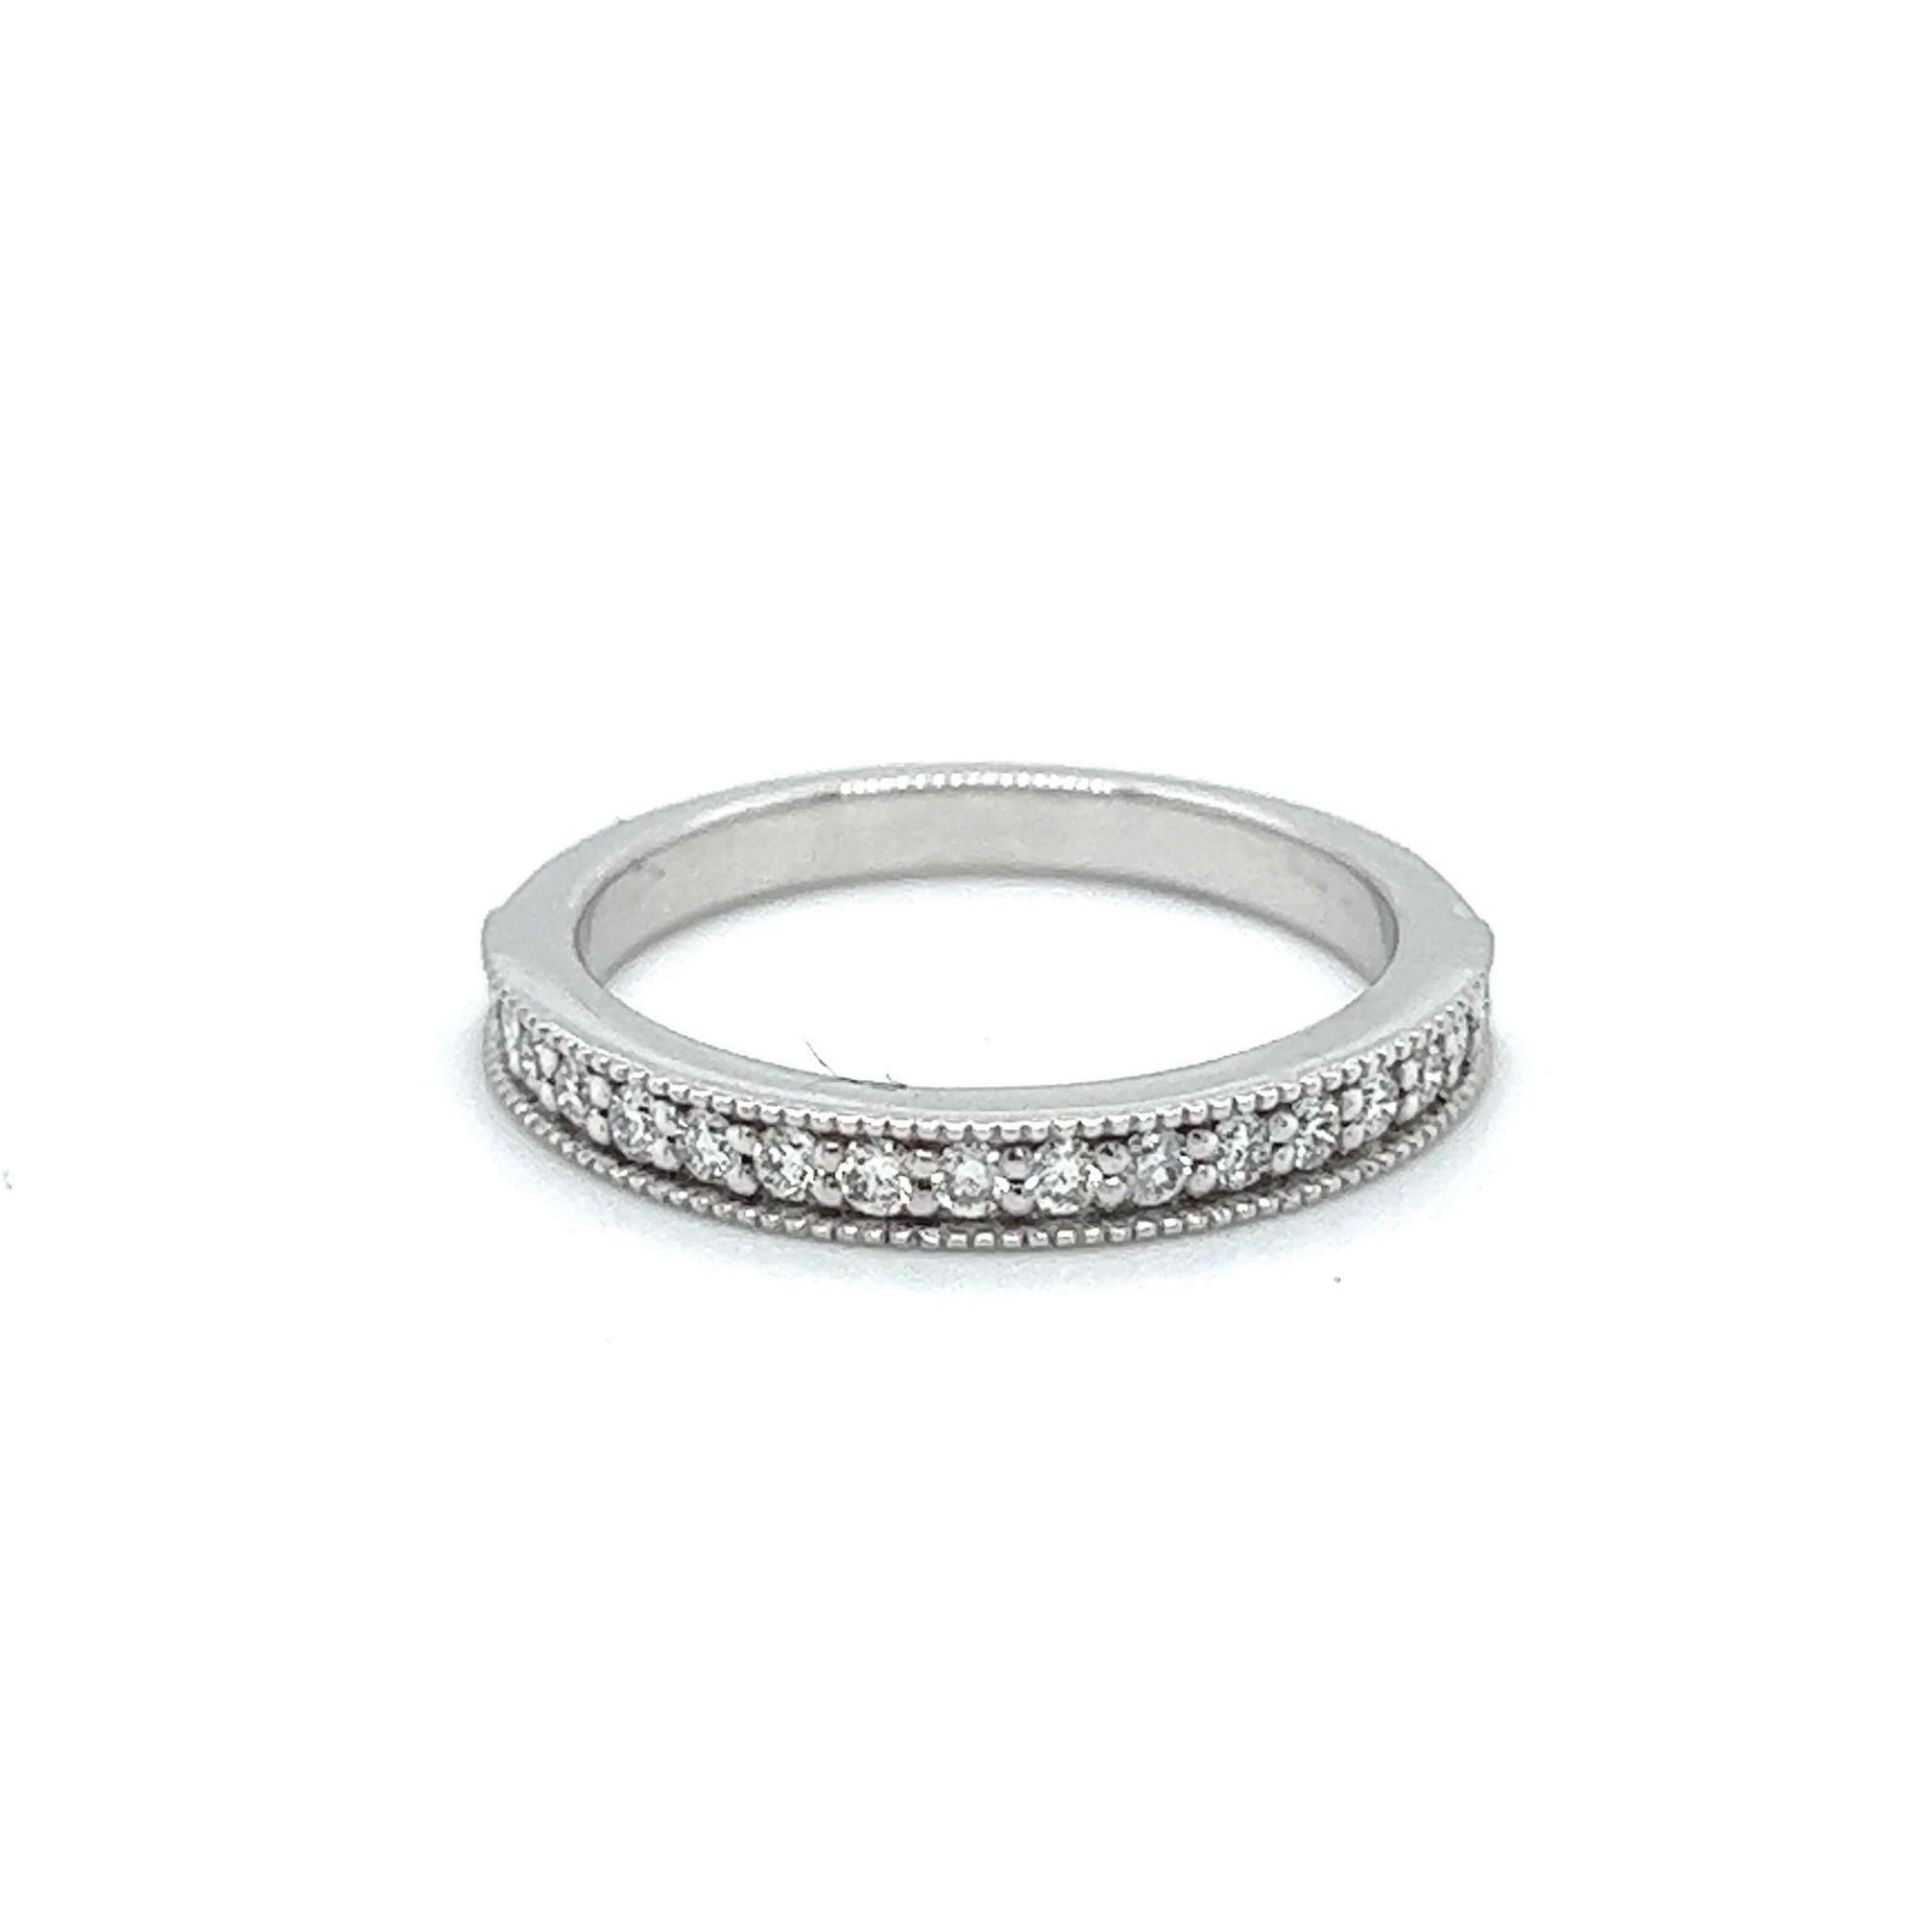 LIKE NEW ESTATE DIAMOND RING 14K WHITE GOLD - Image 2 of 2